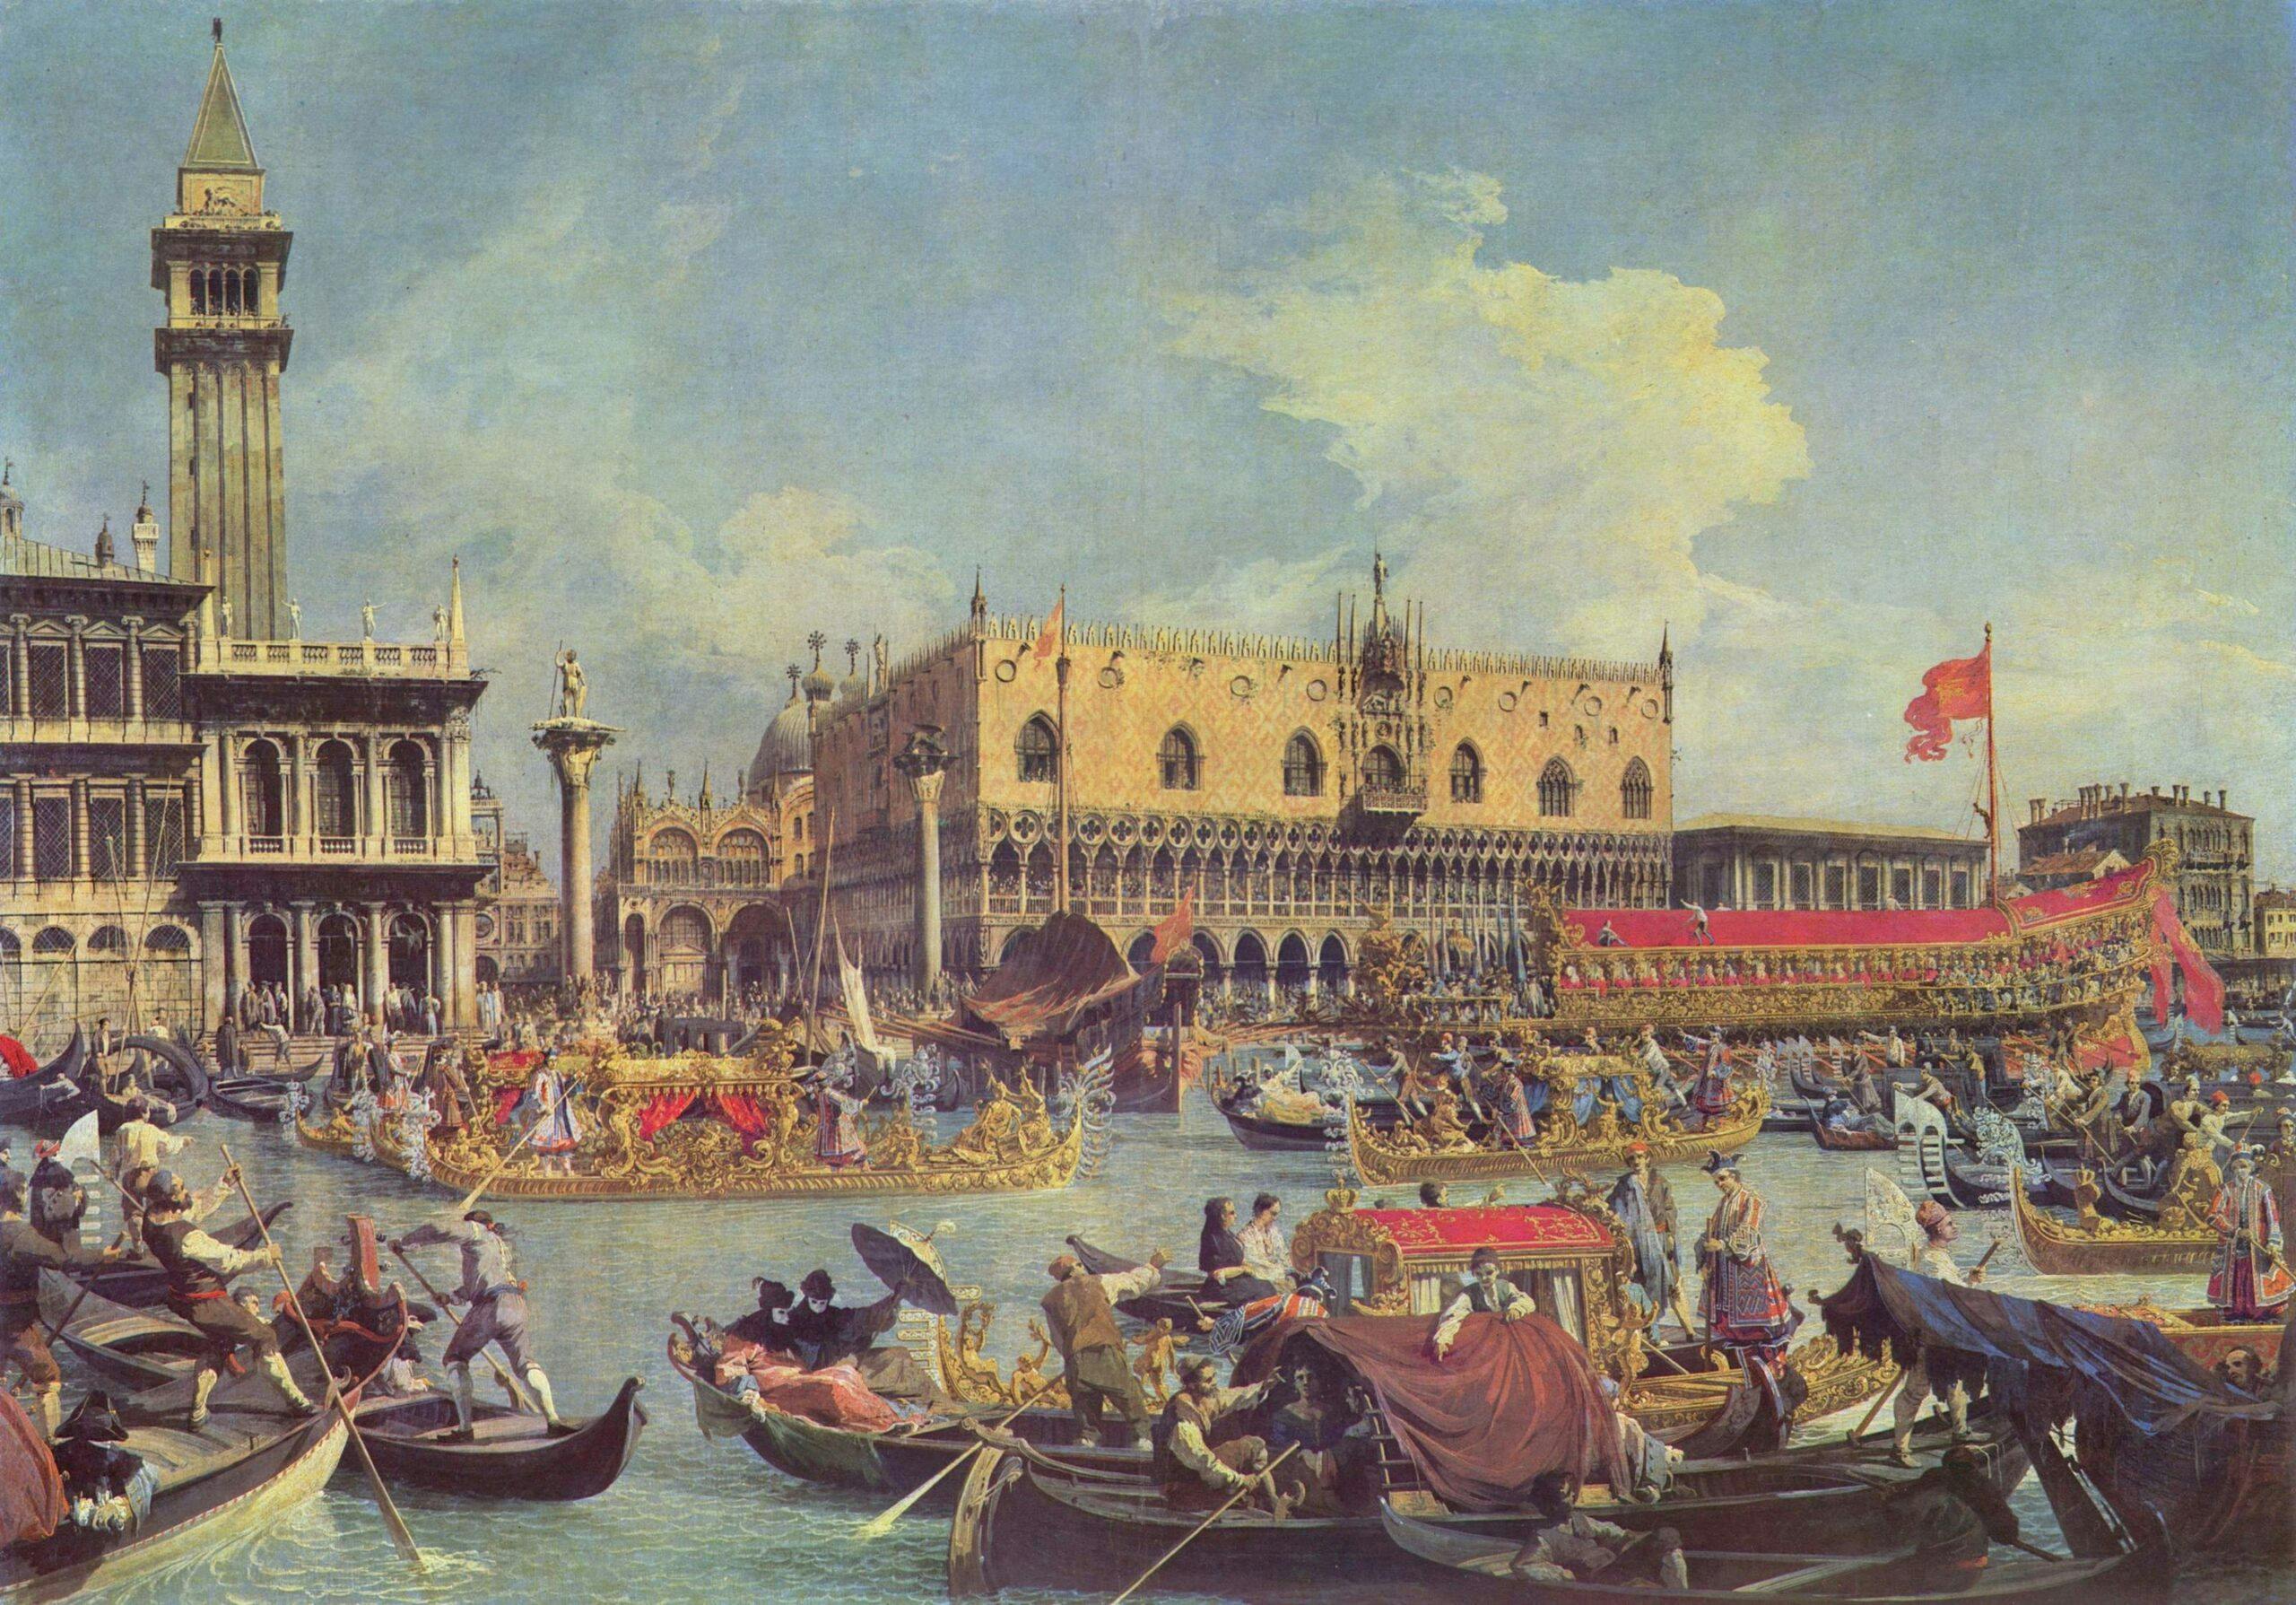 Venice: the adventures of Giacomo Casanova